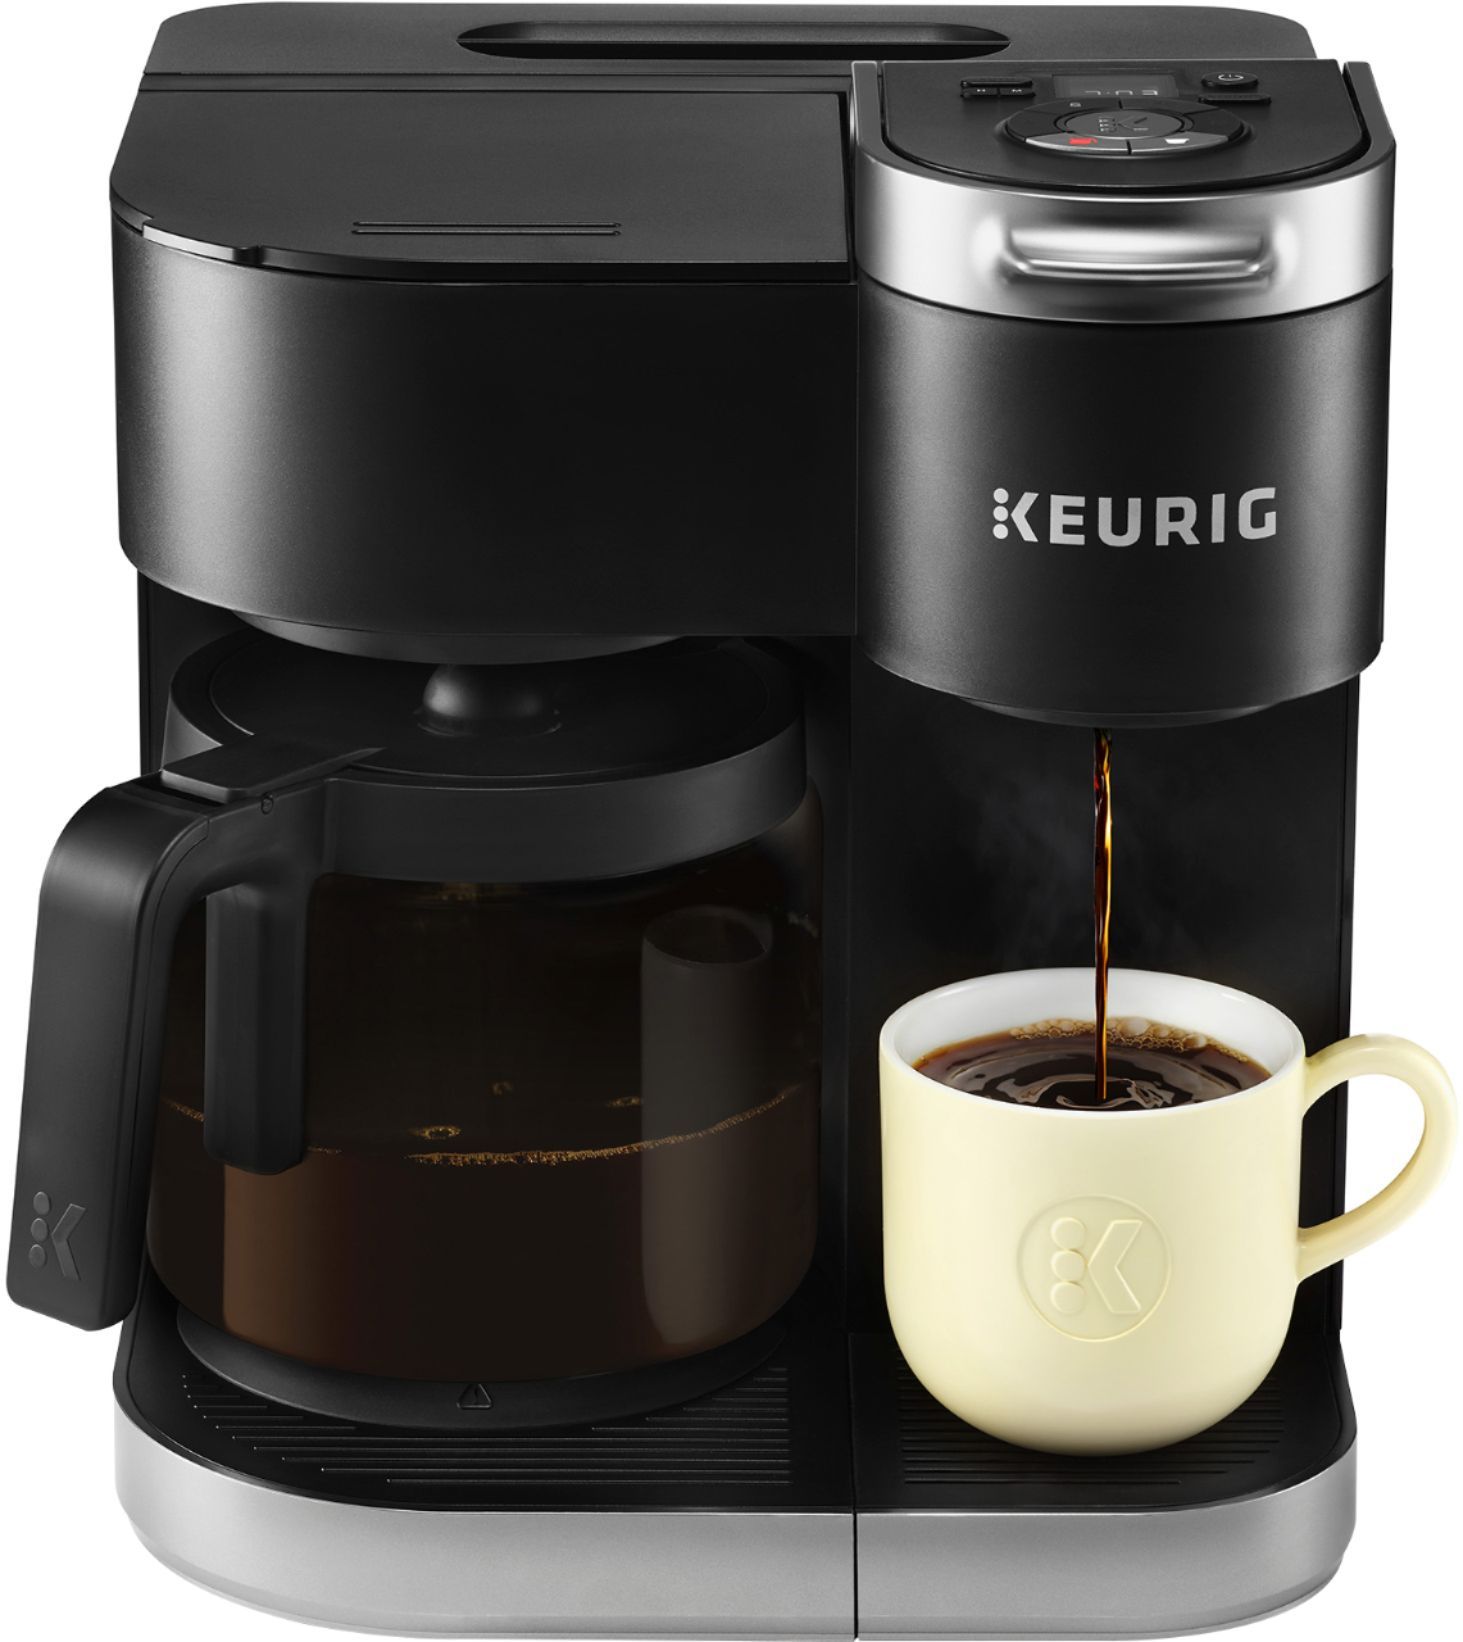 Keurig K-Duo 12-Cup Coffee Maker and Single Serve K-Cup Brewer Black 5000204977 - Best Buy | Best Buy U.S.